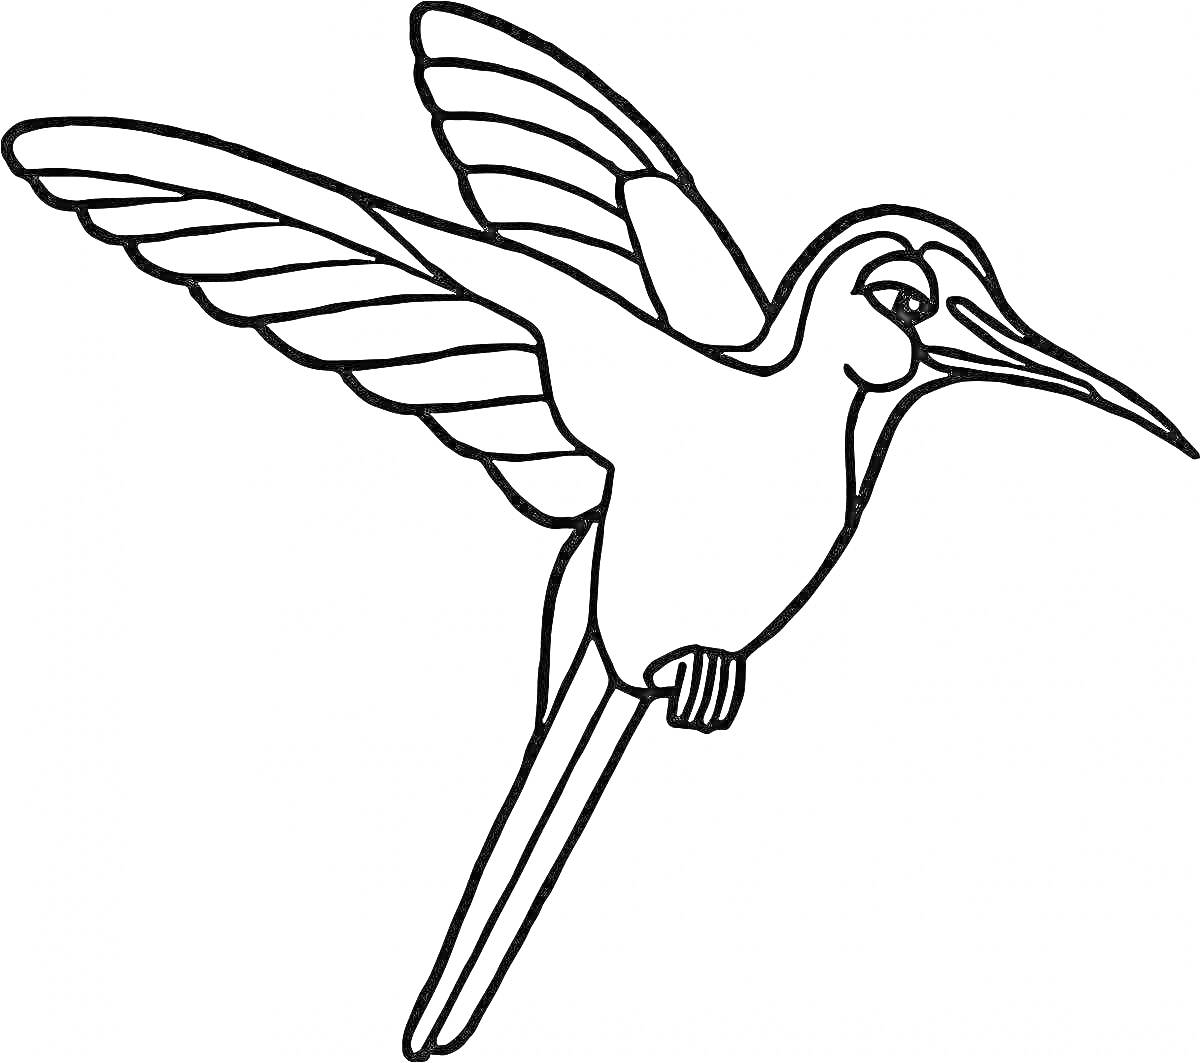 Раскраска Колибри с расправленными крыльями